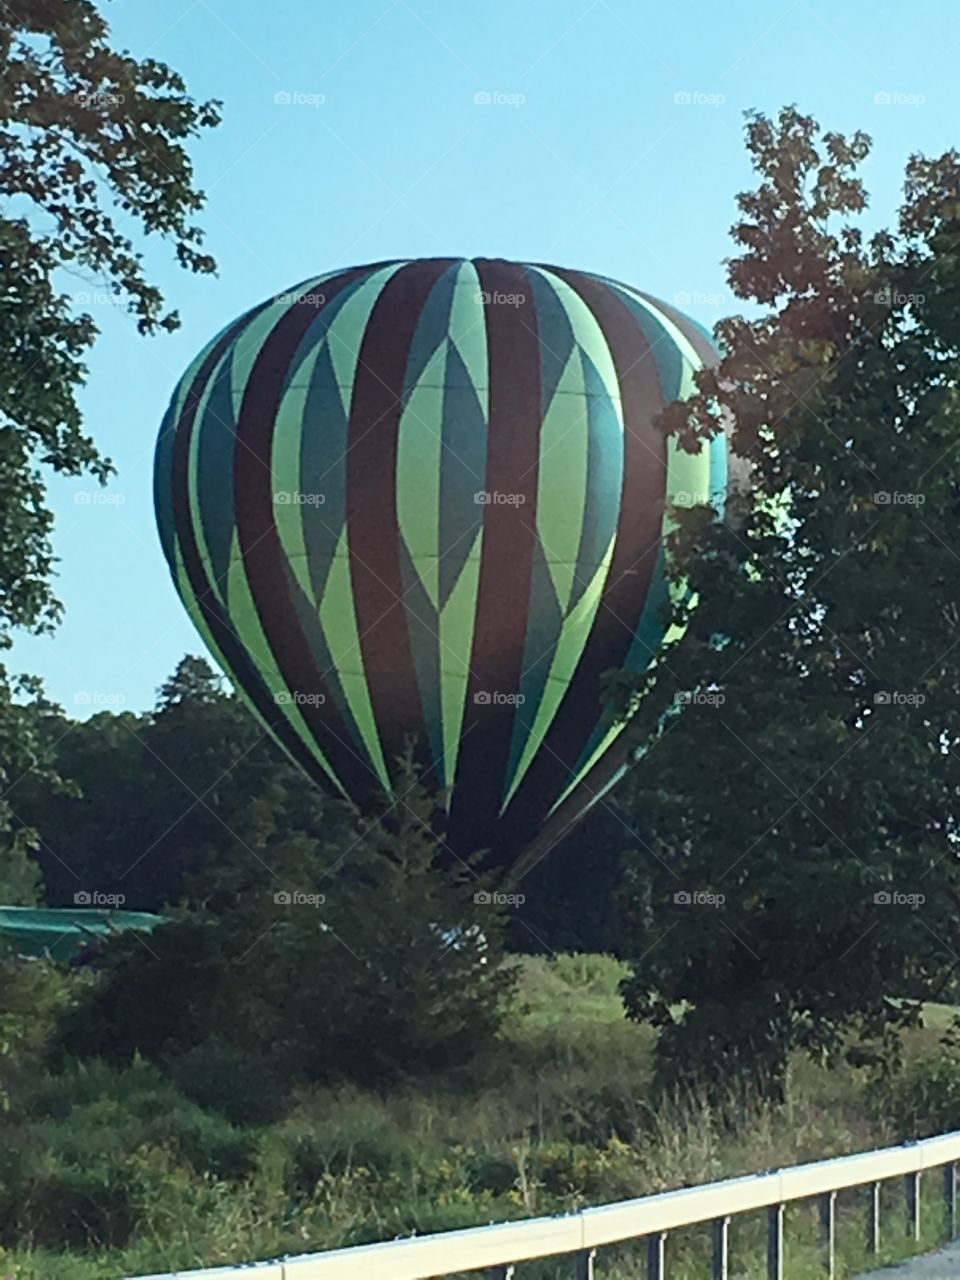 Hot air balloon!